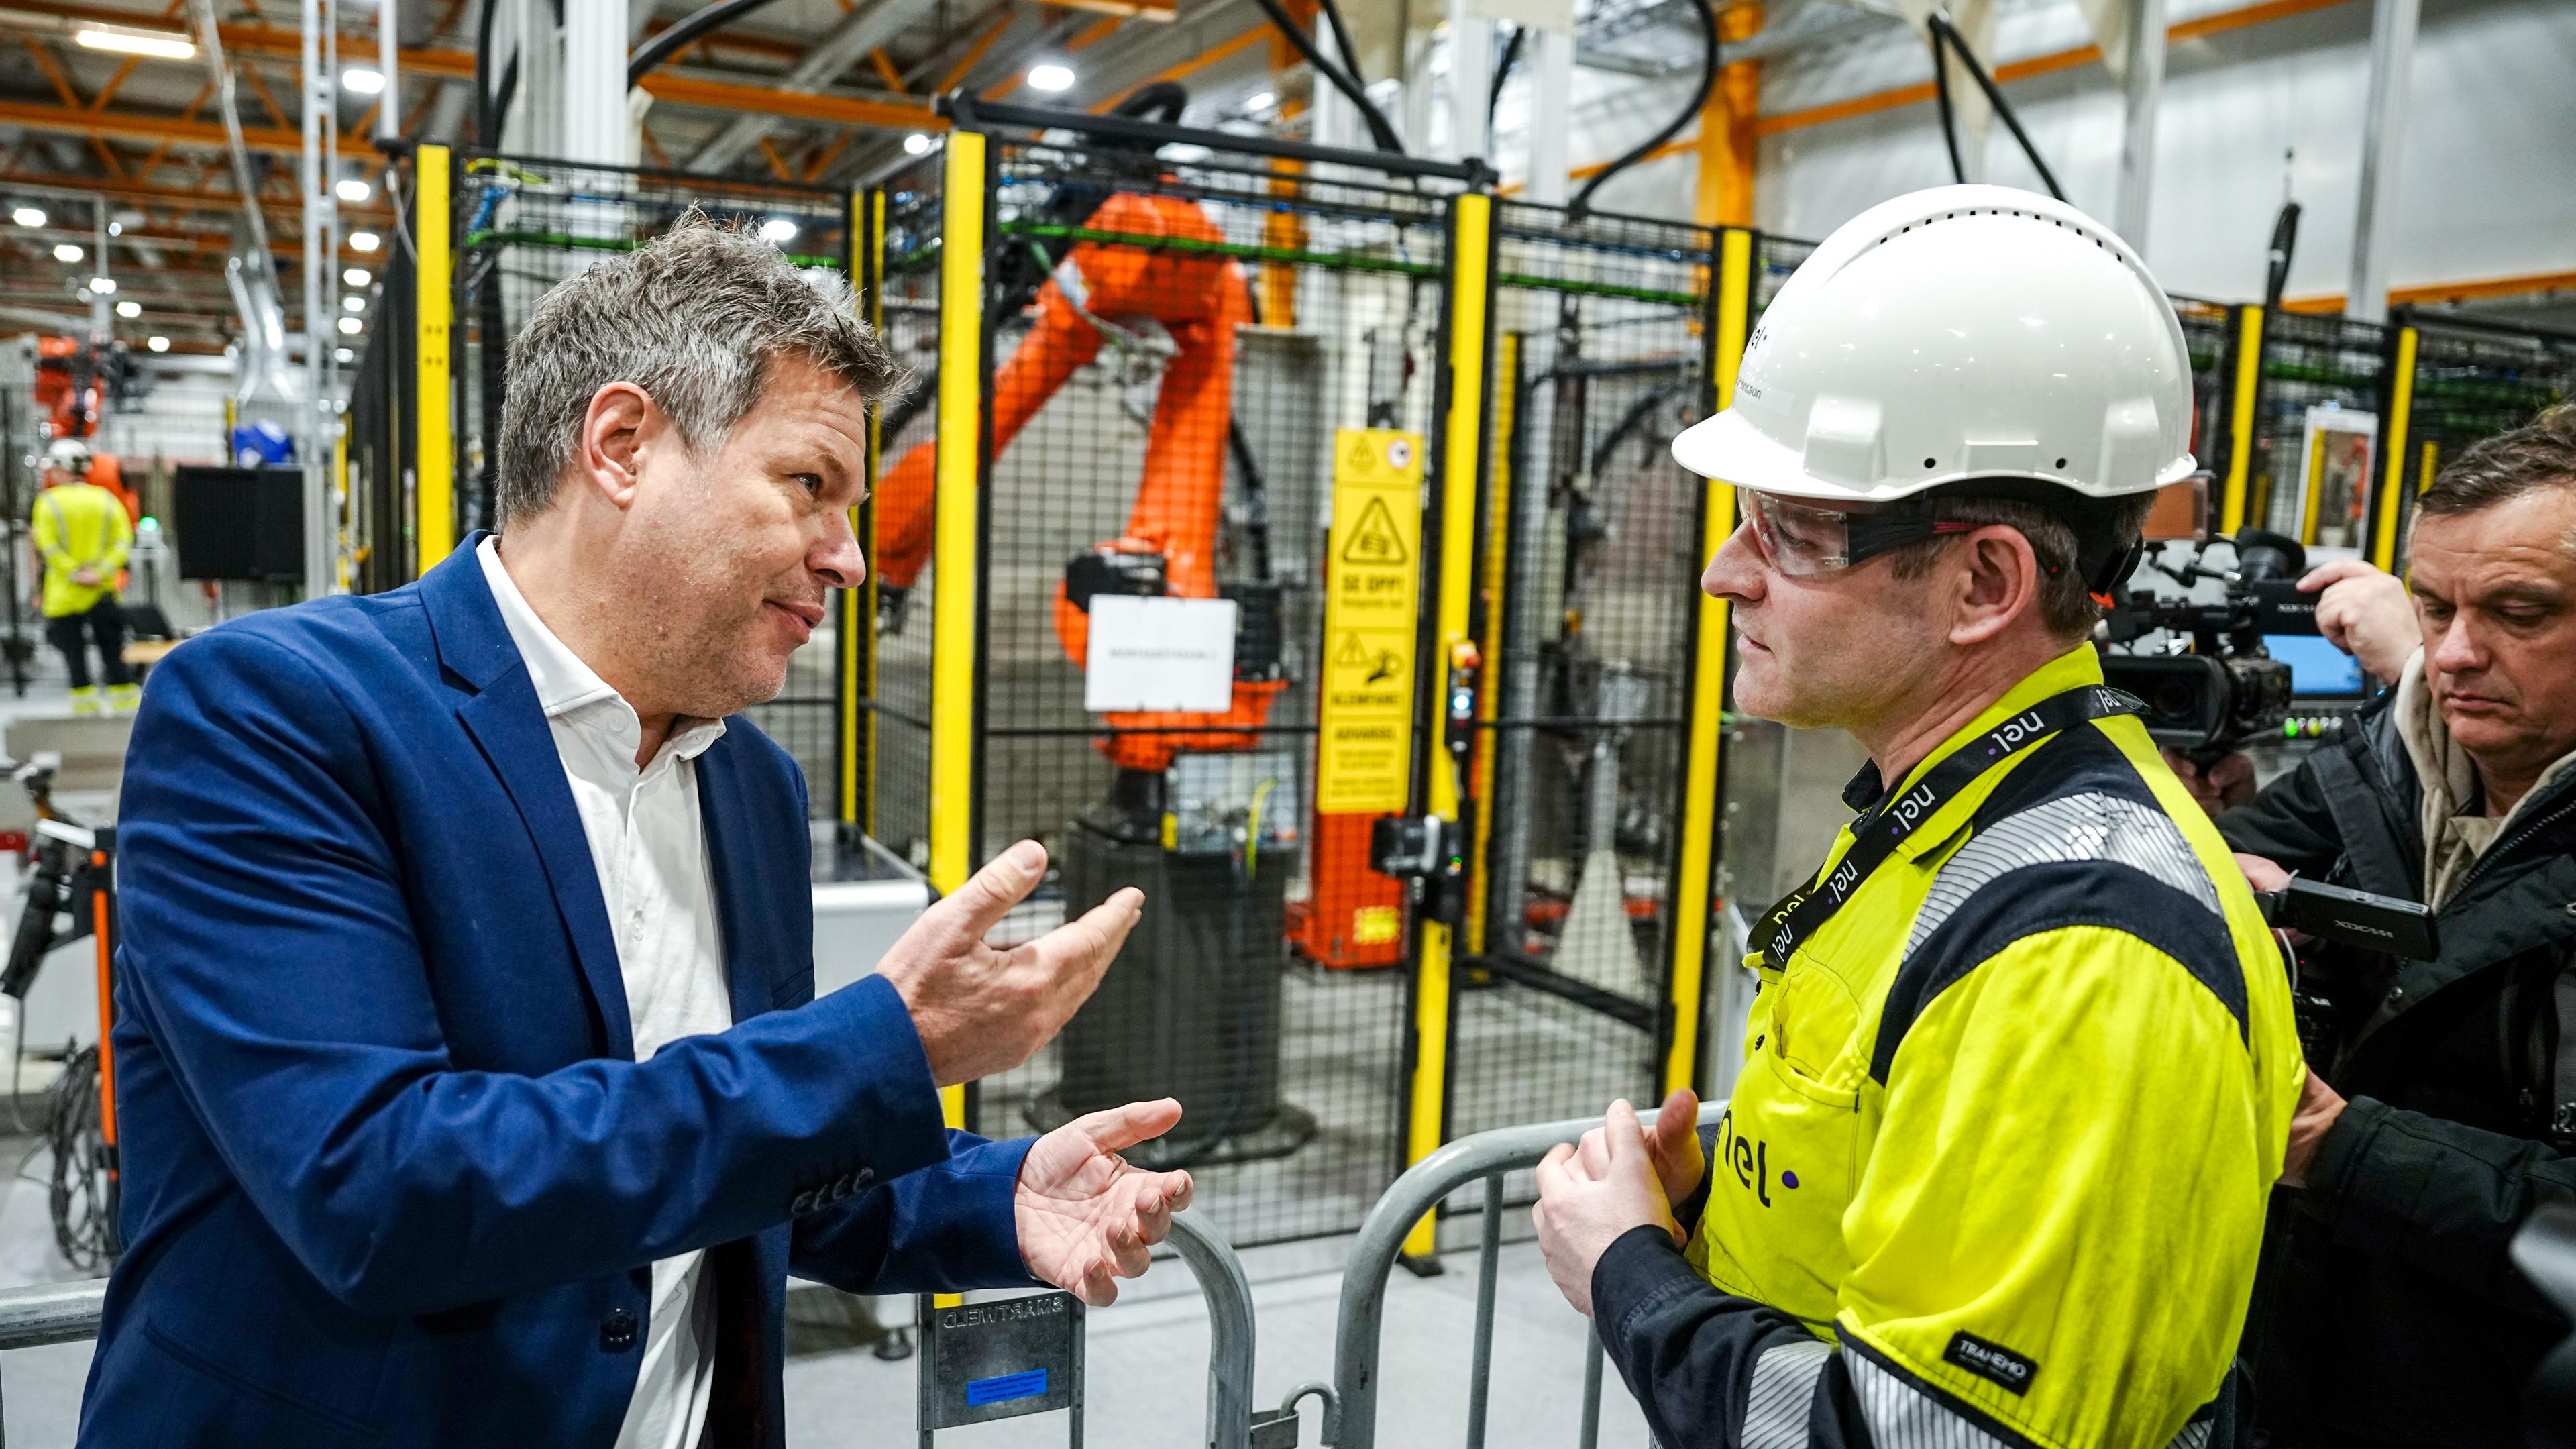 Norwegen, Herøya: Robert Habeck (l, Bündnis 90/Die Grünen), Bundesminister für Wirtschaft und Klimaschutz, besucht eine Firma, die Elektrolyseure zur Gewinnung von grünem Wasserstoff herstellt. Archivbild